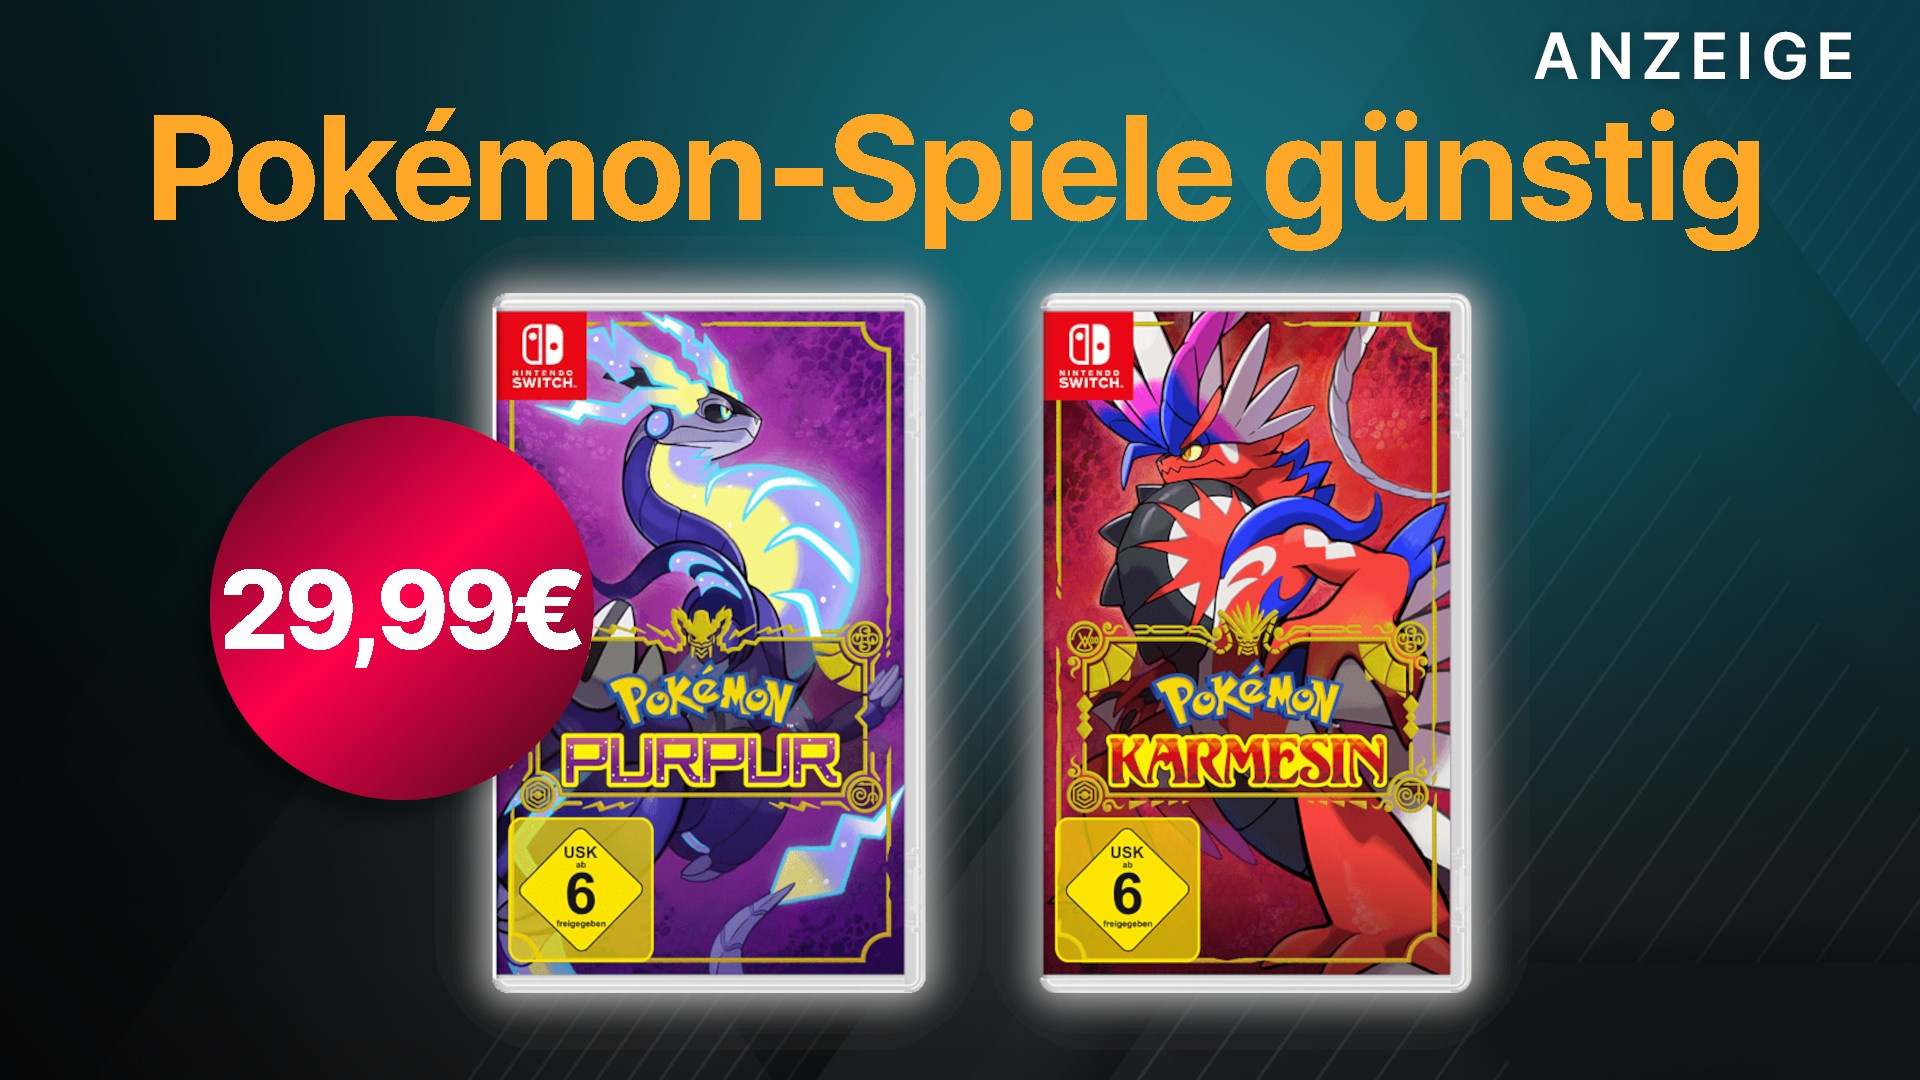 Nur noch heute: Pokémon Purpur & Nintendo Switch Karmesin für Angebot im für 29,99€